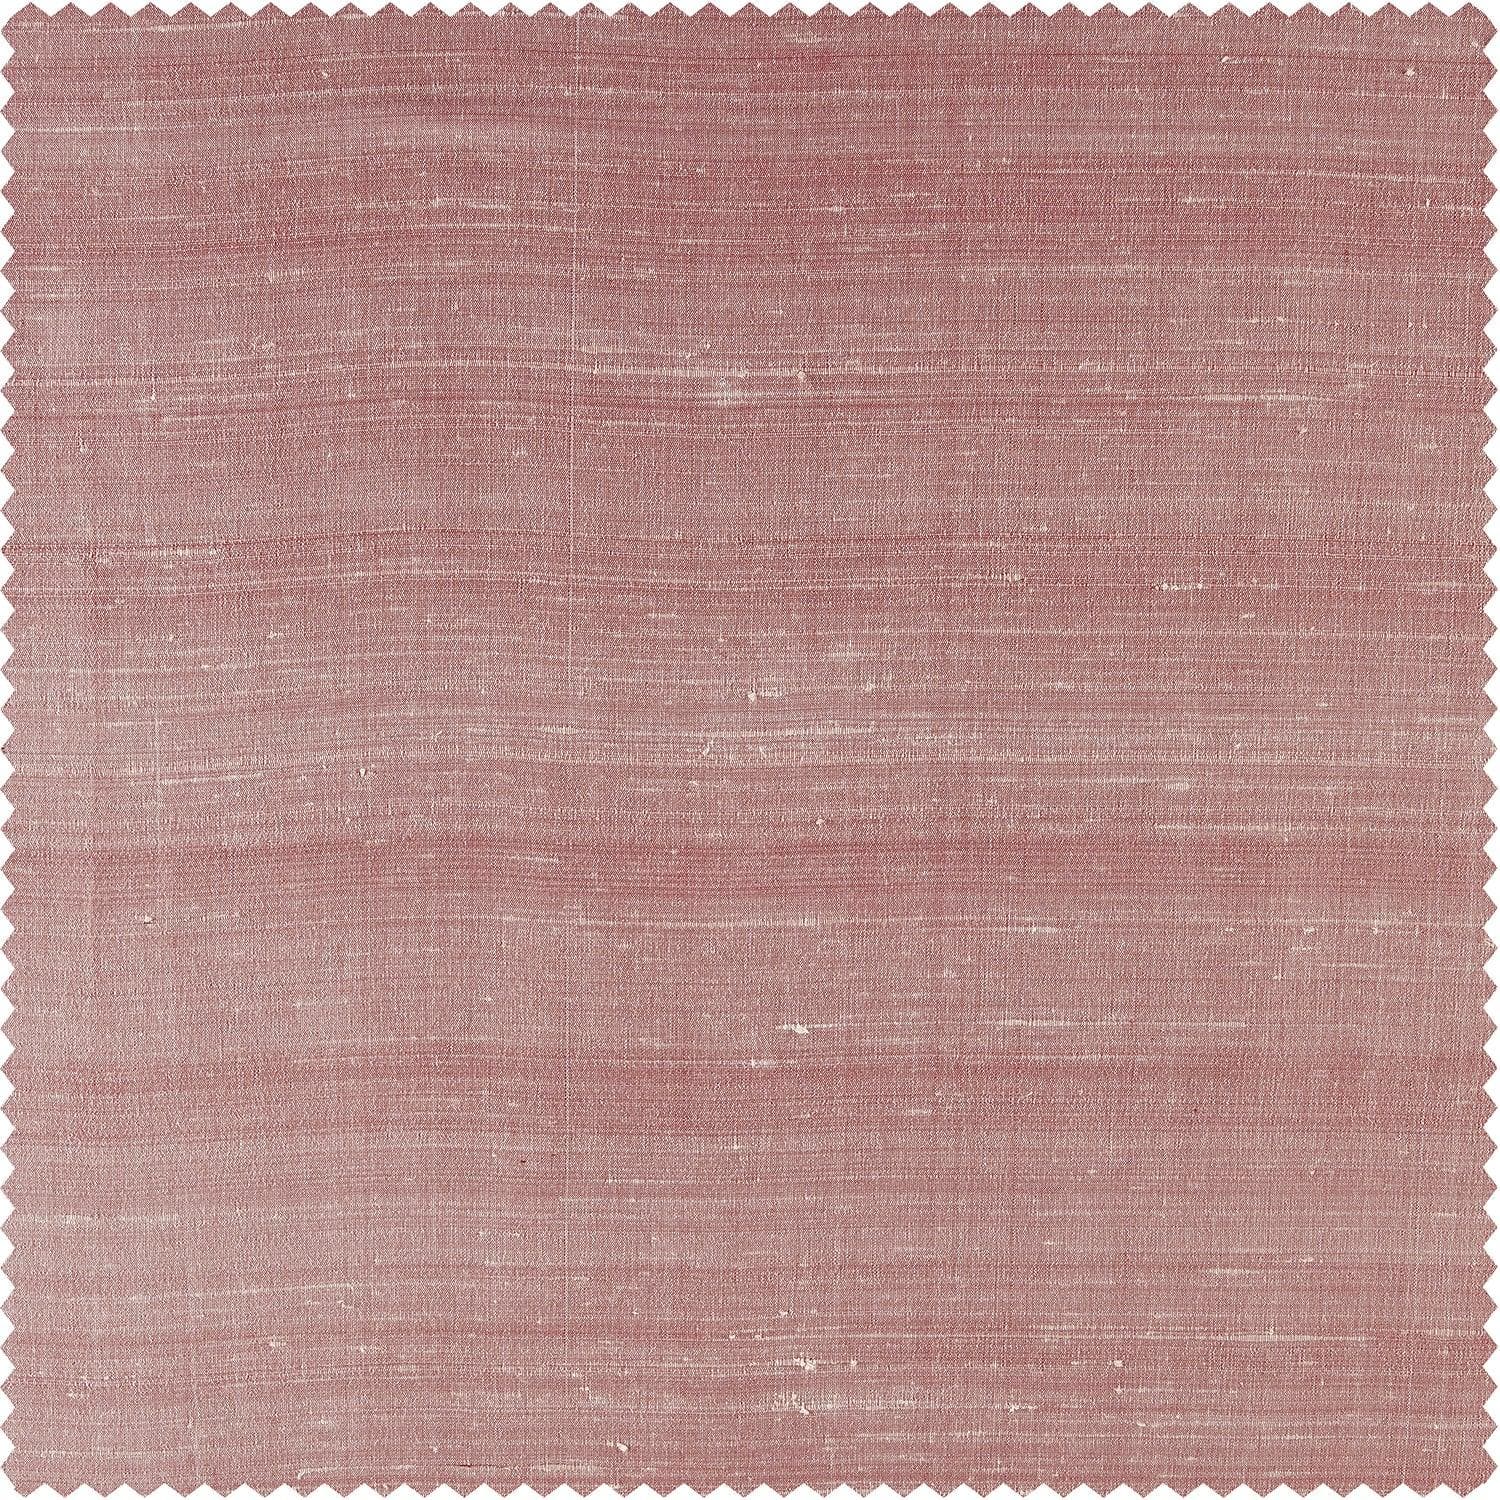 Desert Pink Textured Dupioni Silk Swatch